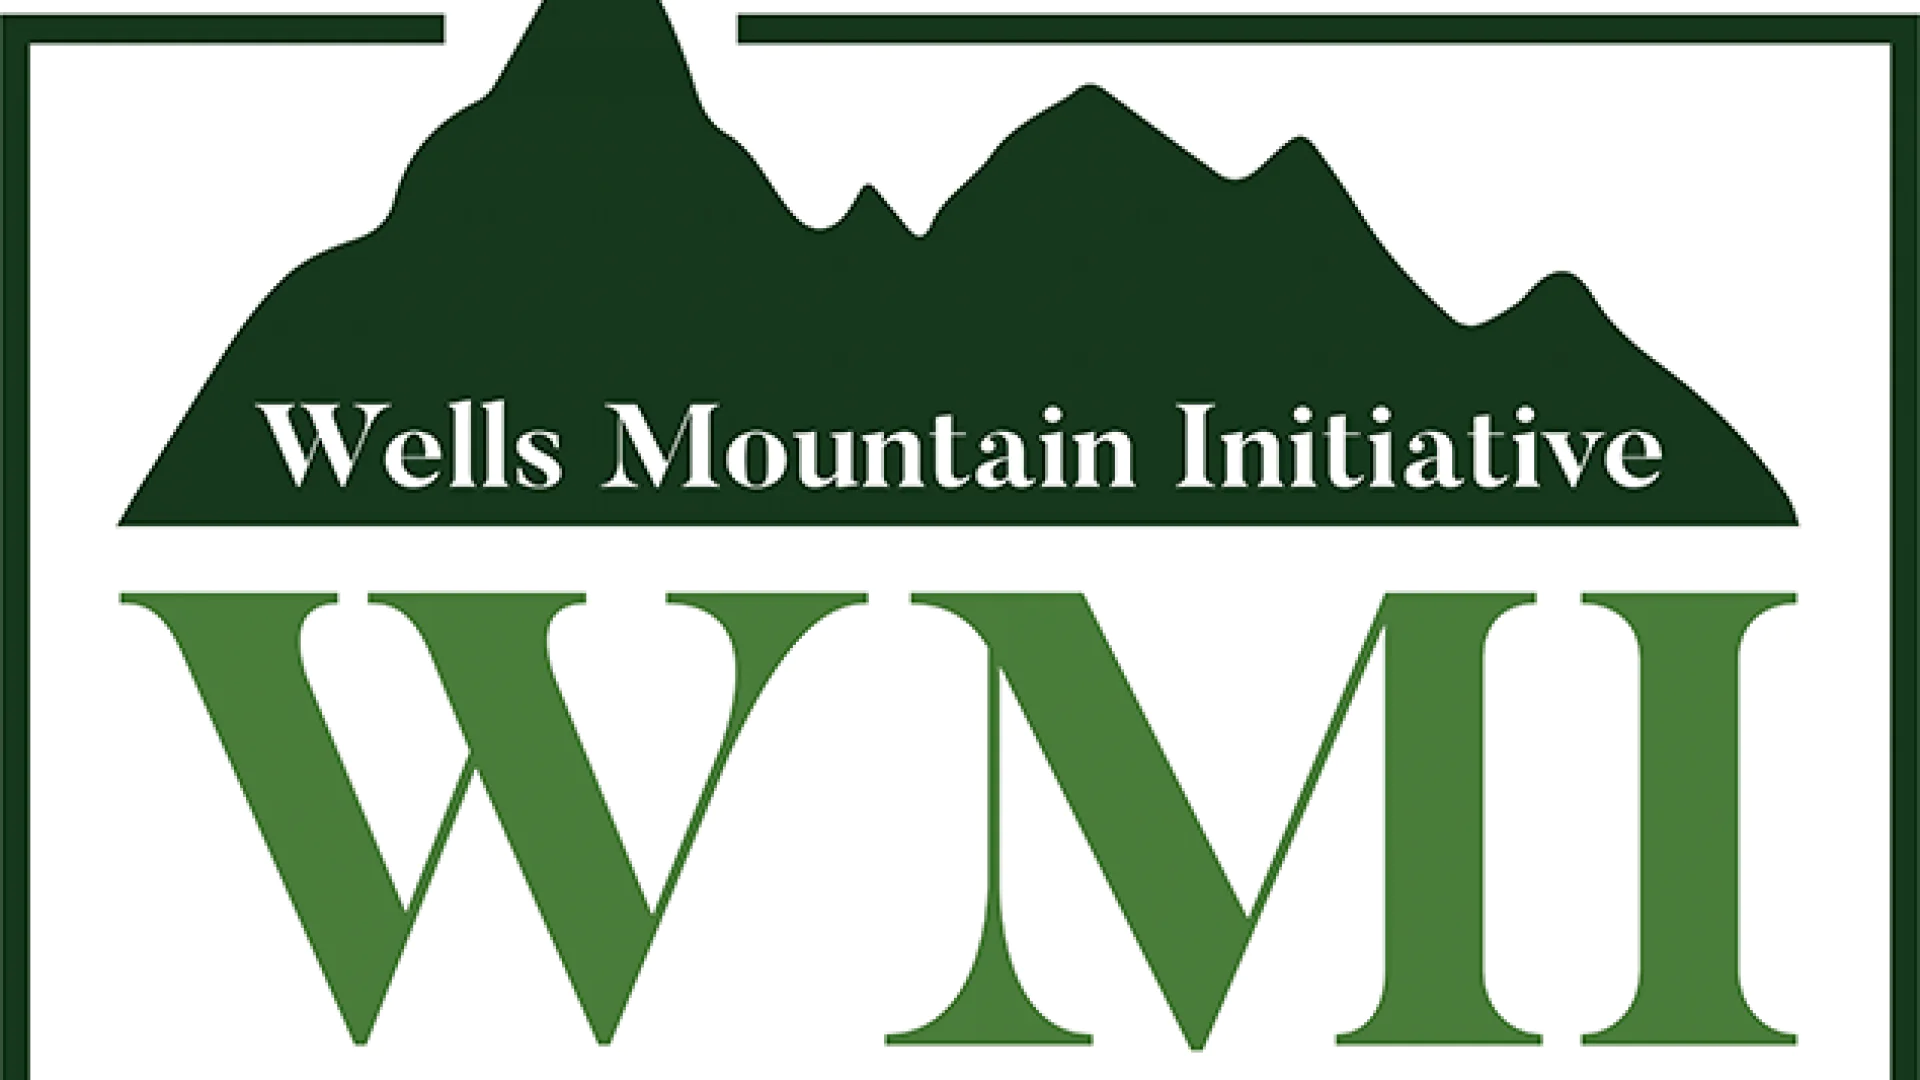 Bakalavr bosqichi talabalari uchun Wells Mountain Initiative stipendiya dasturi. Yillik stiрendiya miqdori — $3000 gacha